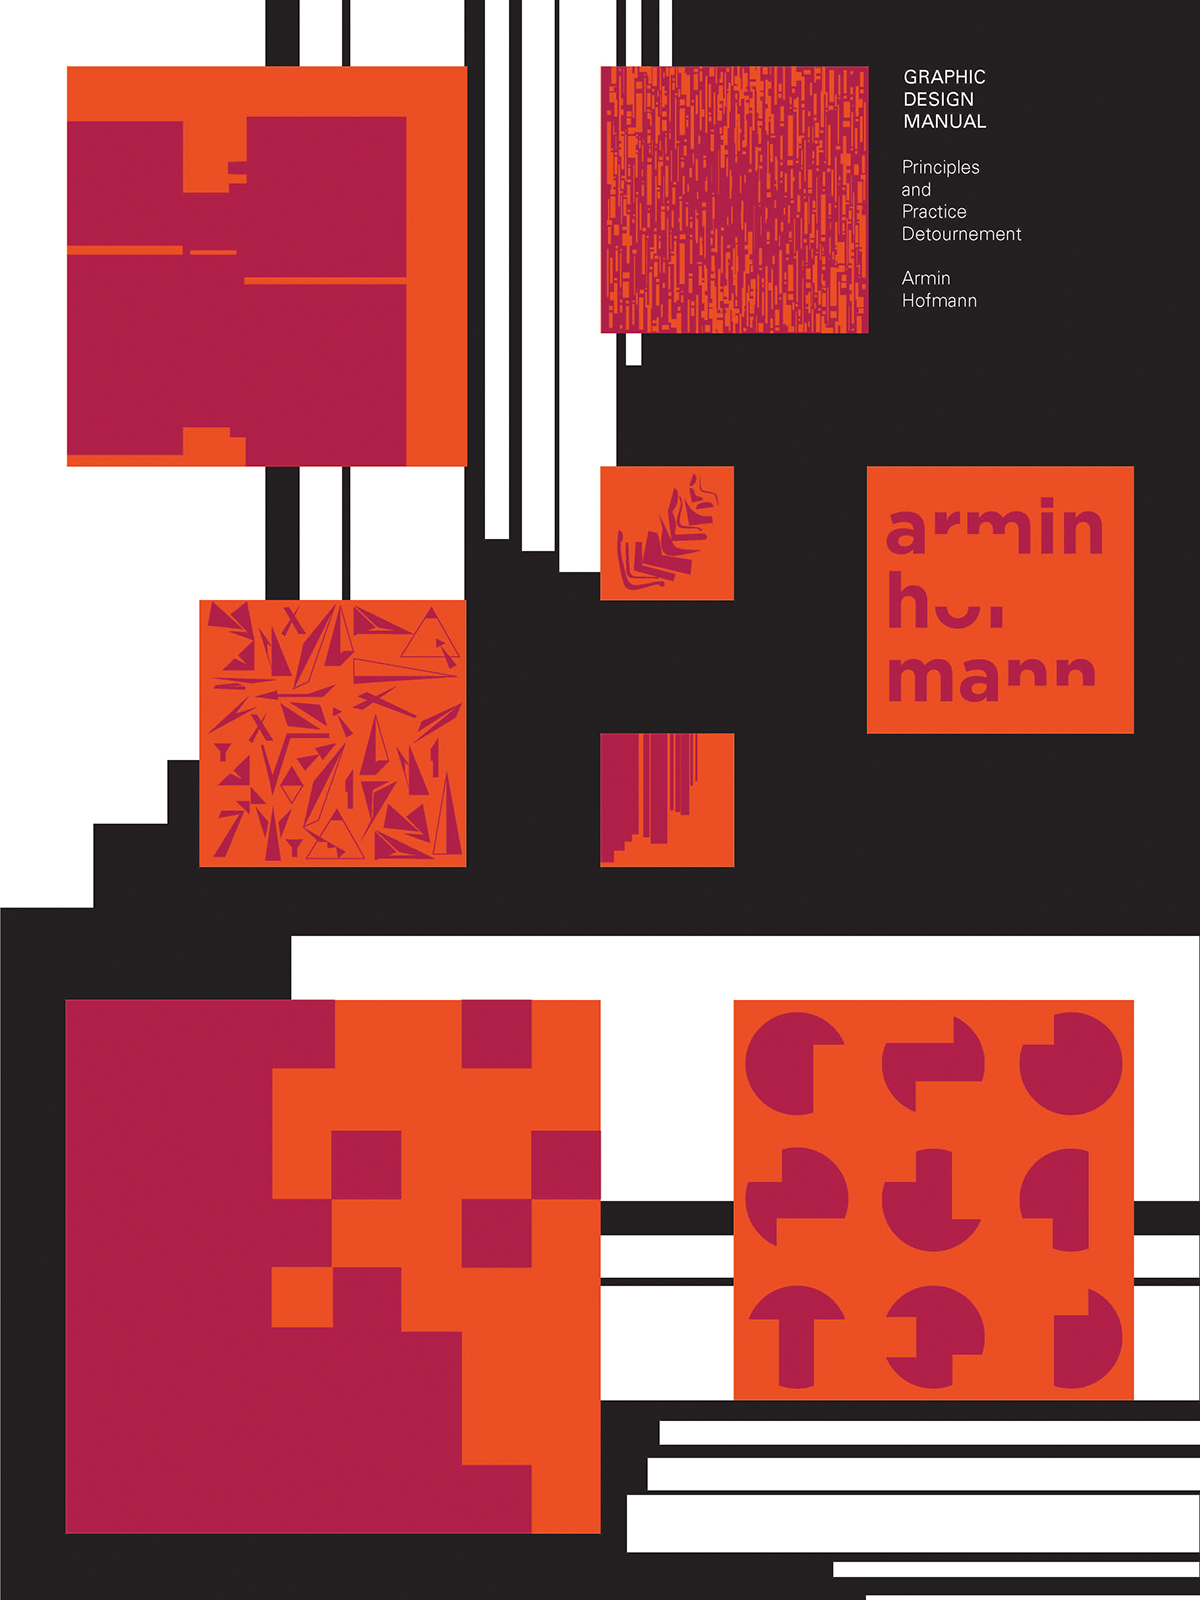 Armin Hofmann experimental design détournement